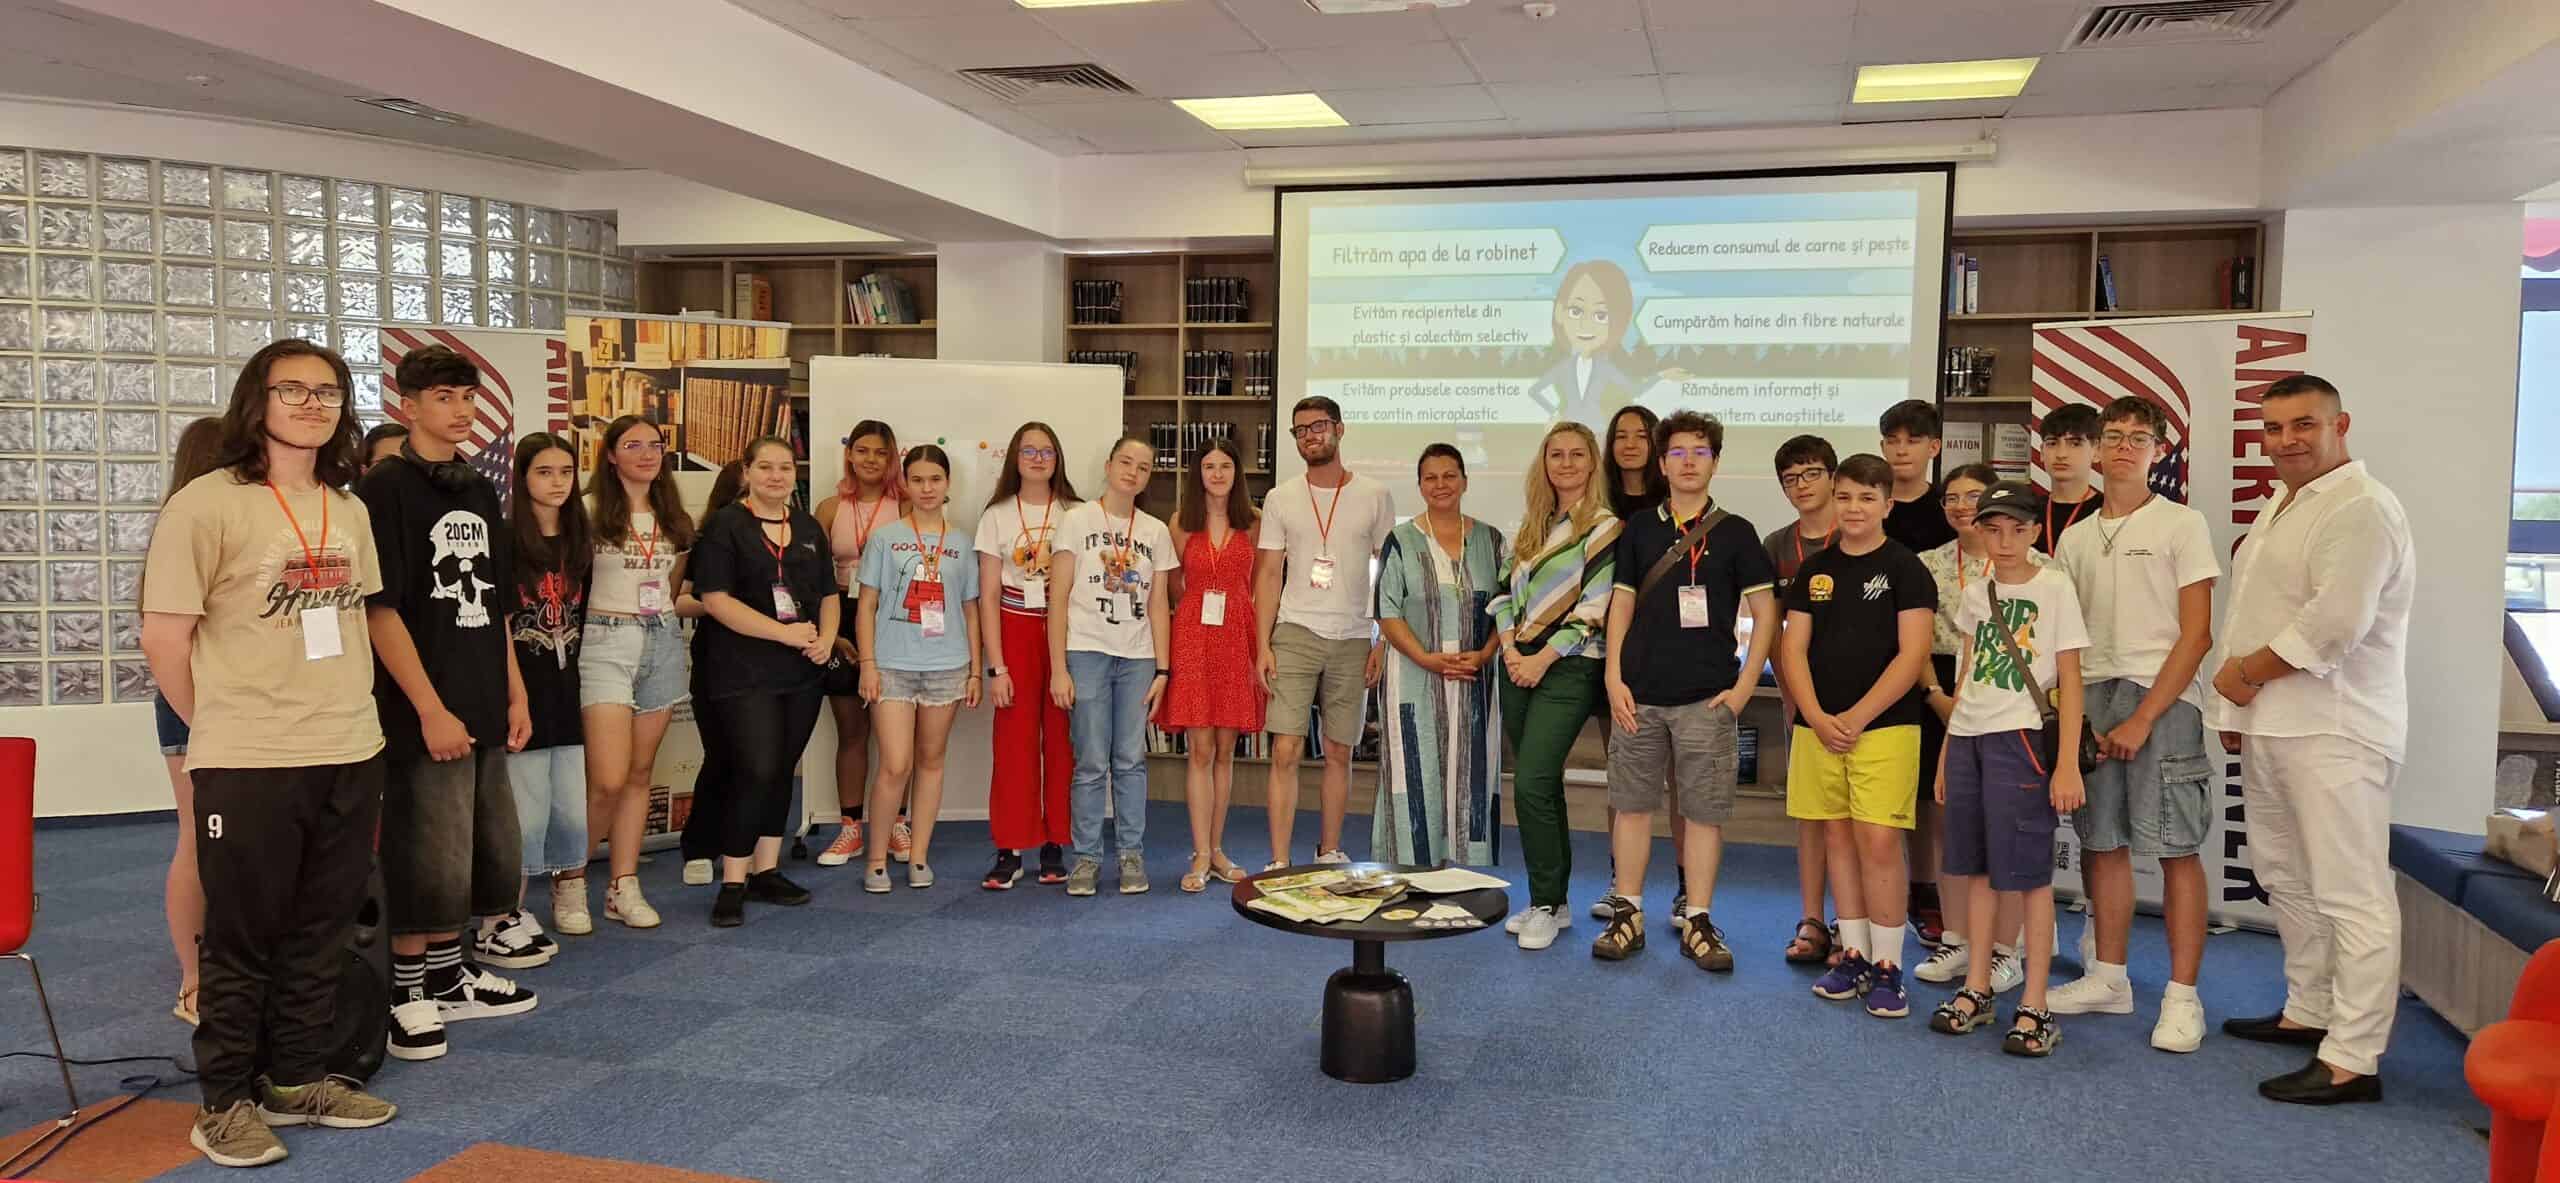 soma a susținut o prezentare la biblioteca județeană astra. directorul răzvan pop: "am invitat modele demne de urmat pentru adolescenți"